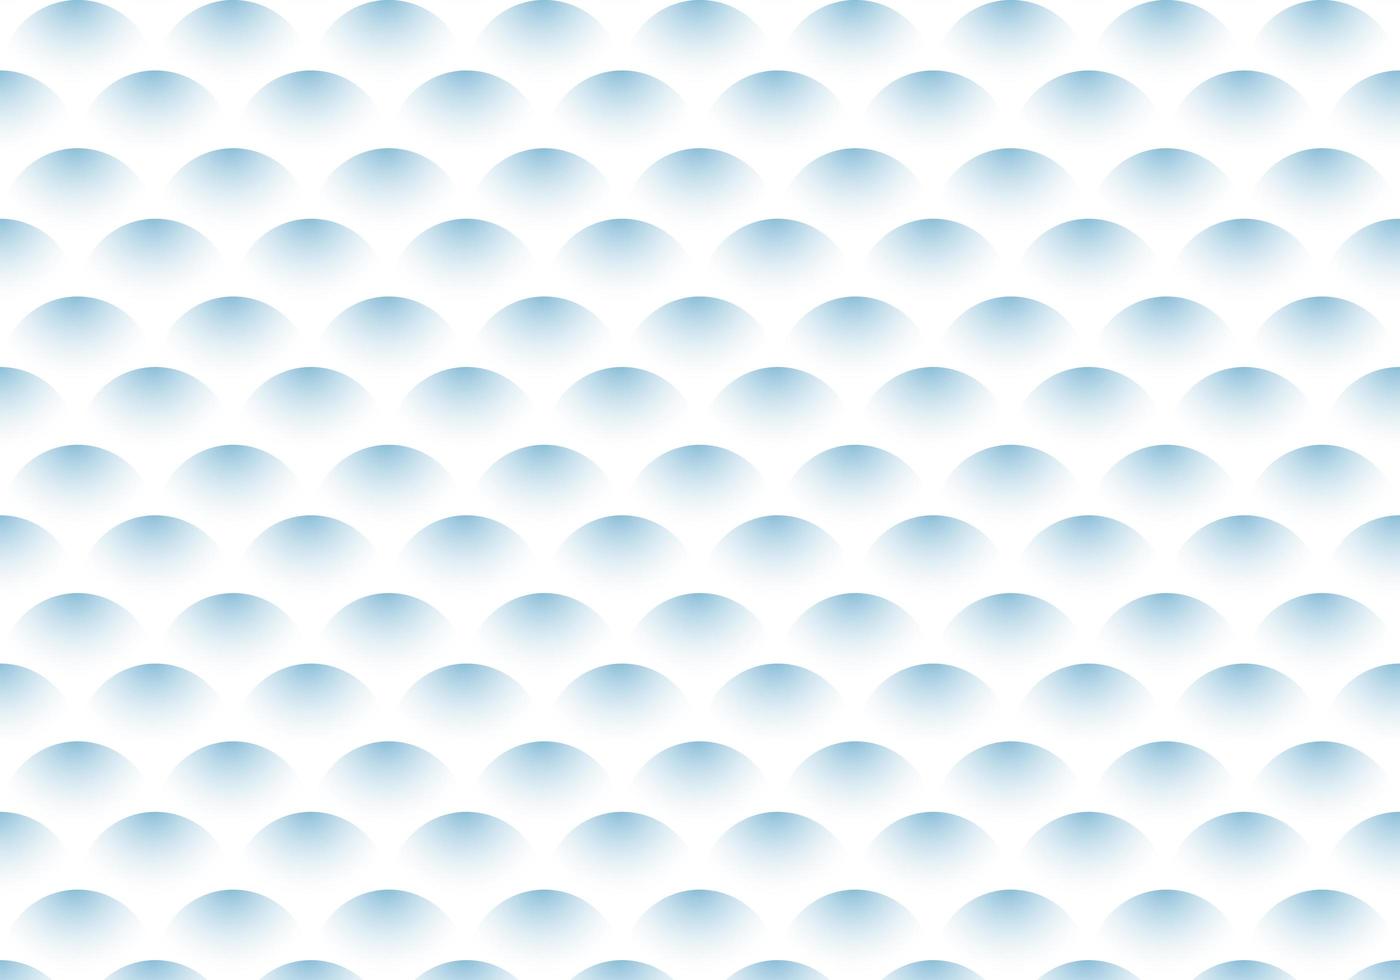 patrón de onda degradado azul semicírculo abstracto sobre fondo blanco. vector